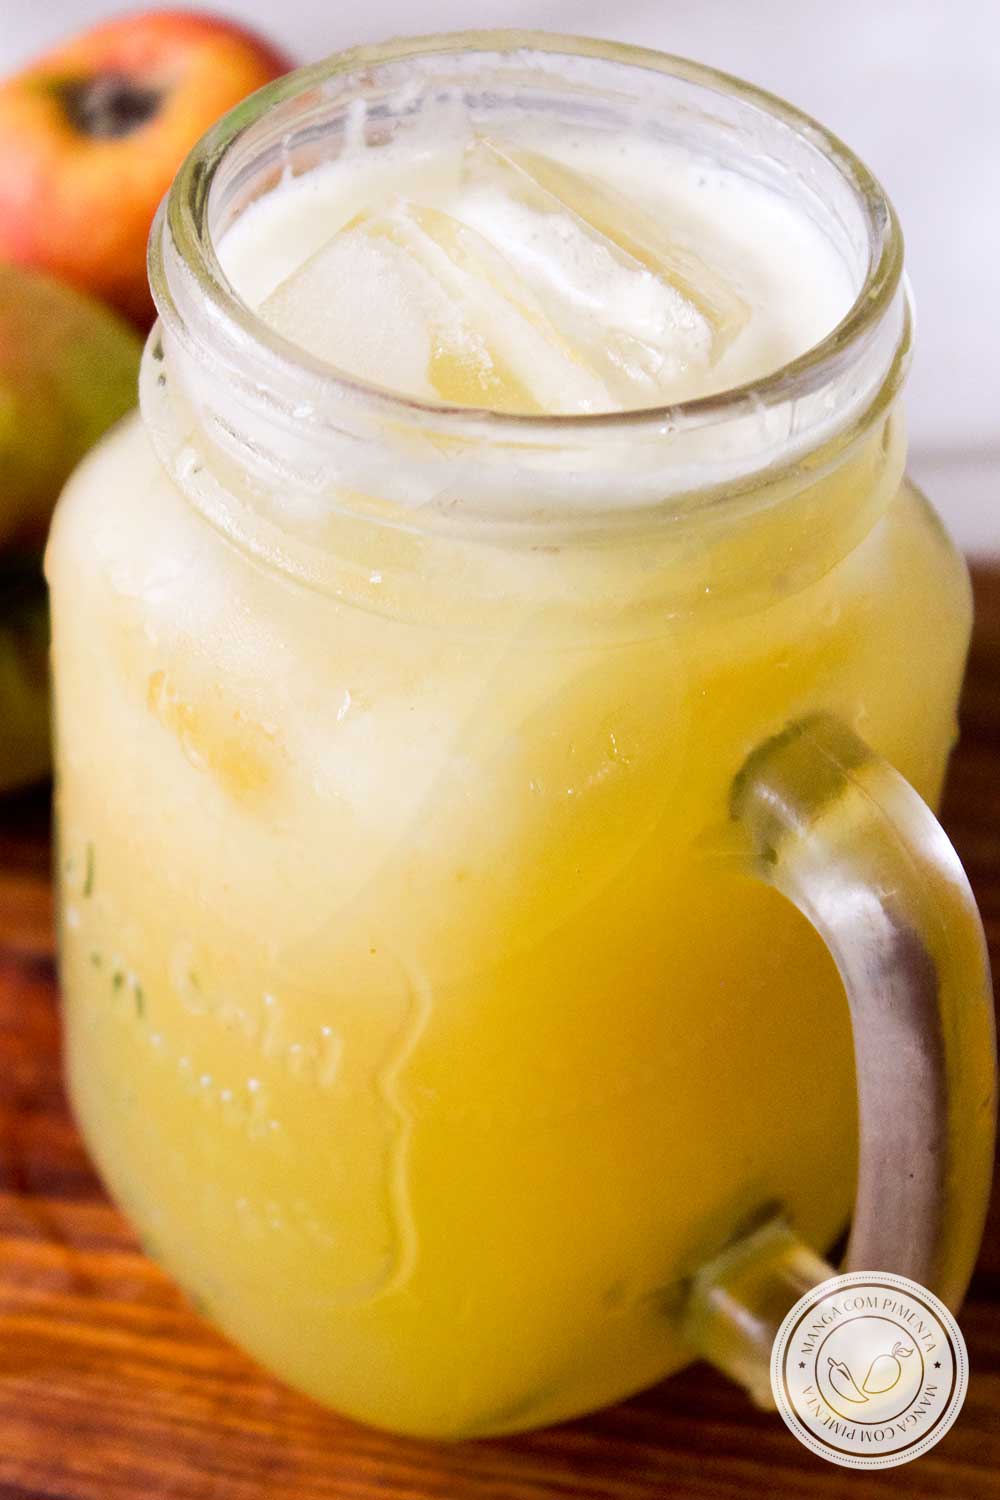 Receita de Limonada de Maçã - prepare esse delicioso suco para matar a sede com muito sabor!